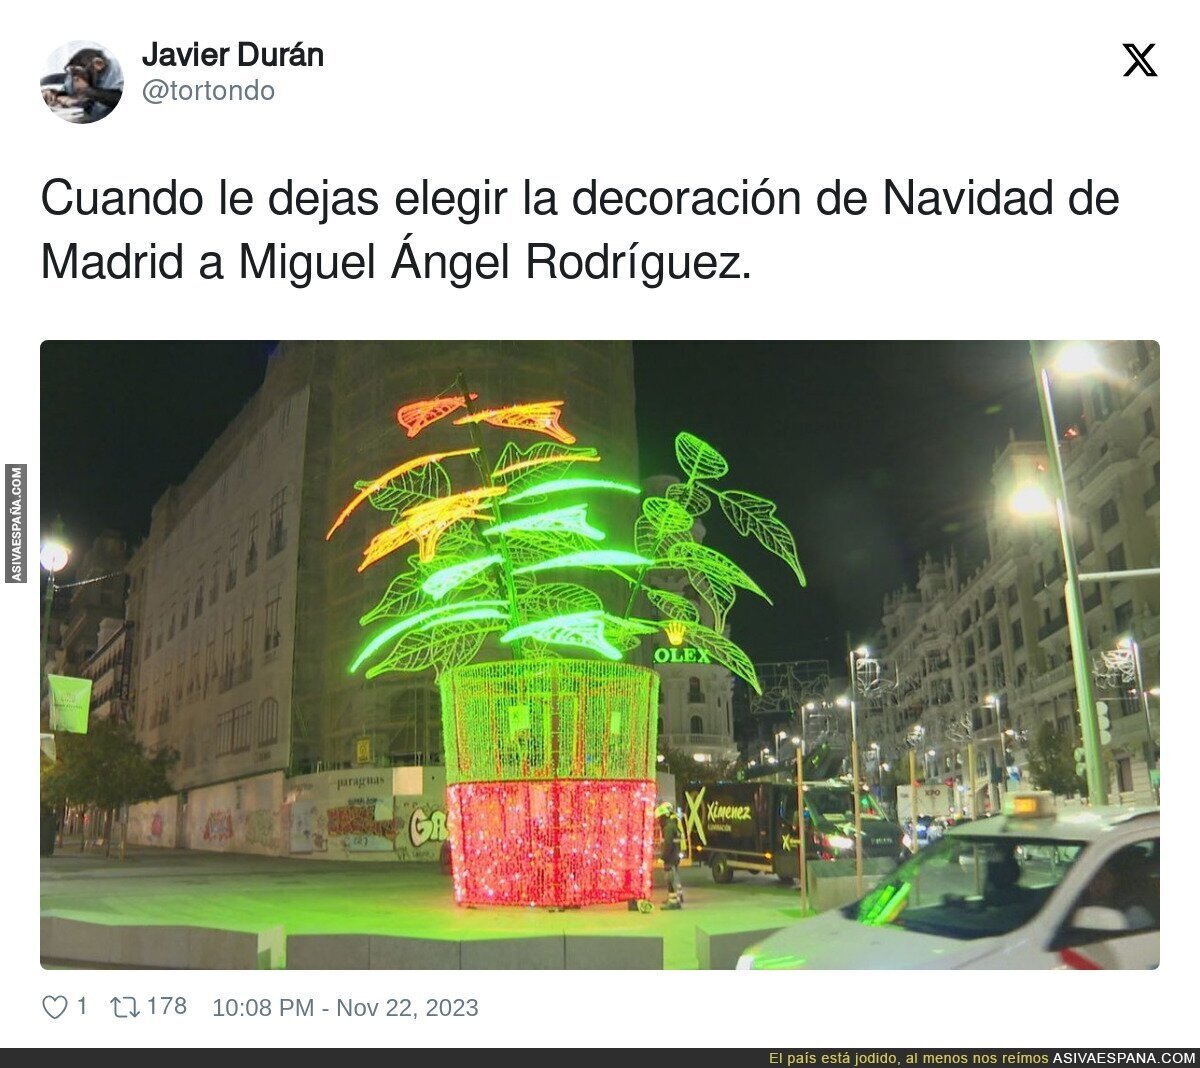 La curiosa decoración navideña de Madrid